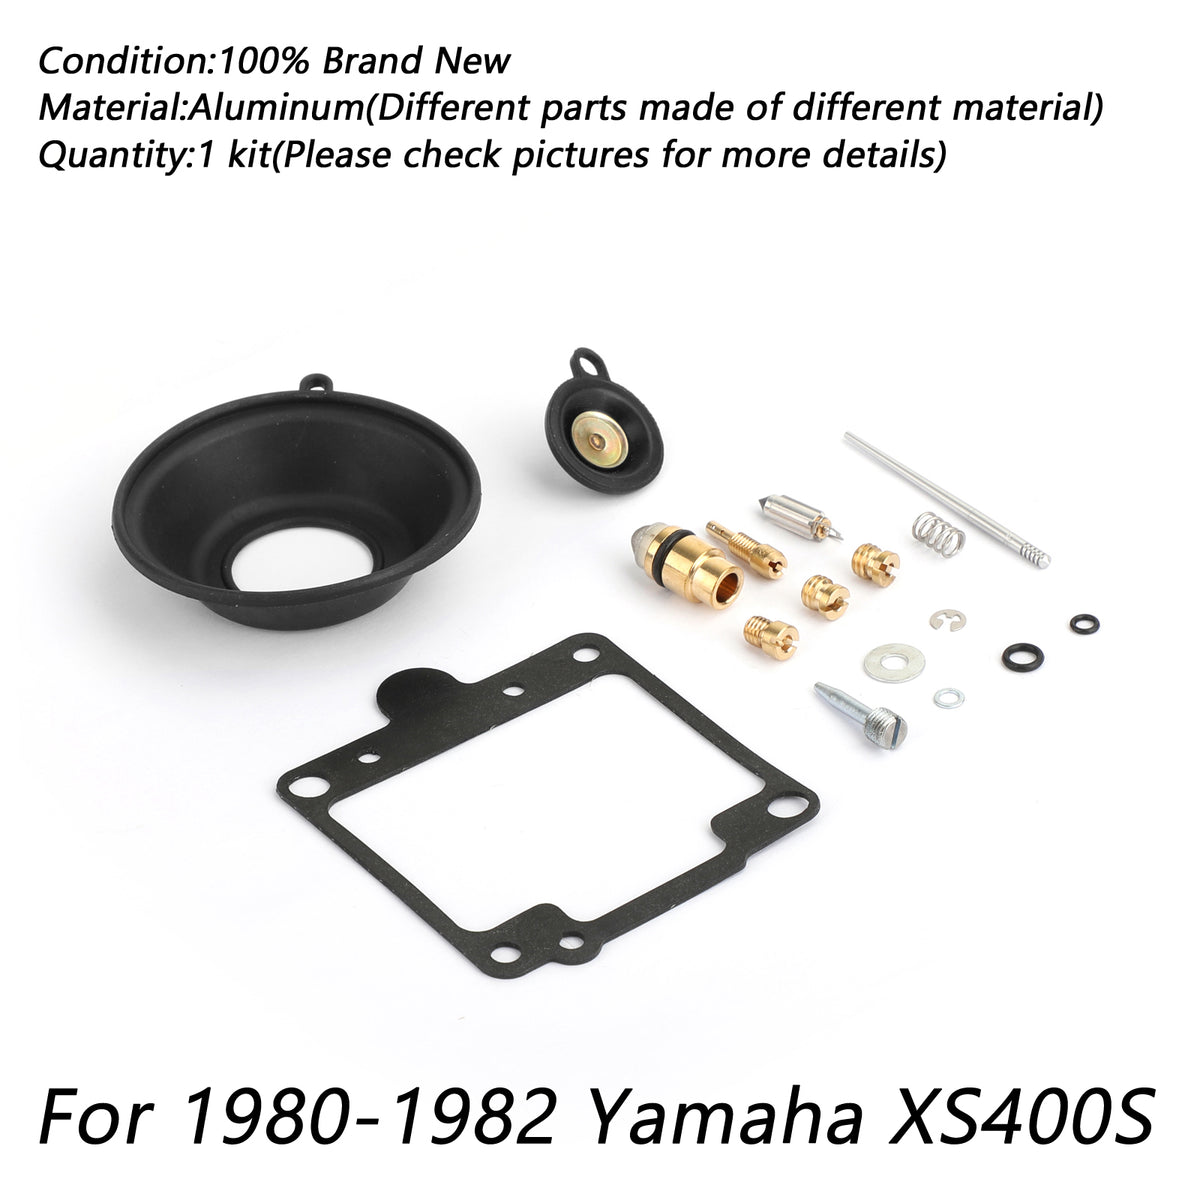 Yamaha Carburetor Repair Rebuild Kit Fit For Yamaha XS400S 1980-1982